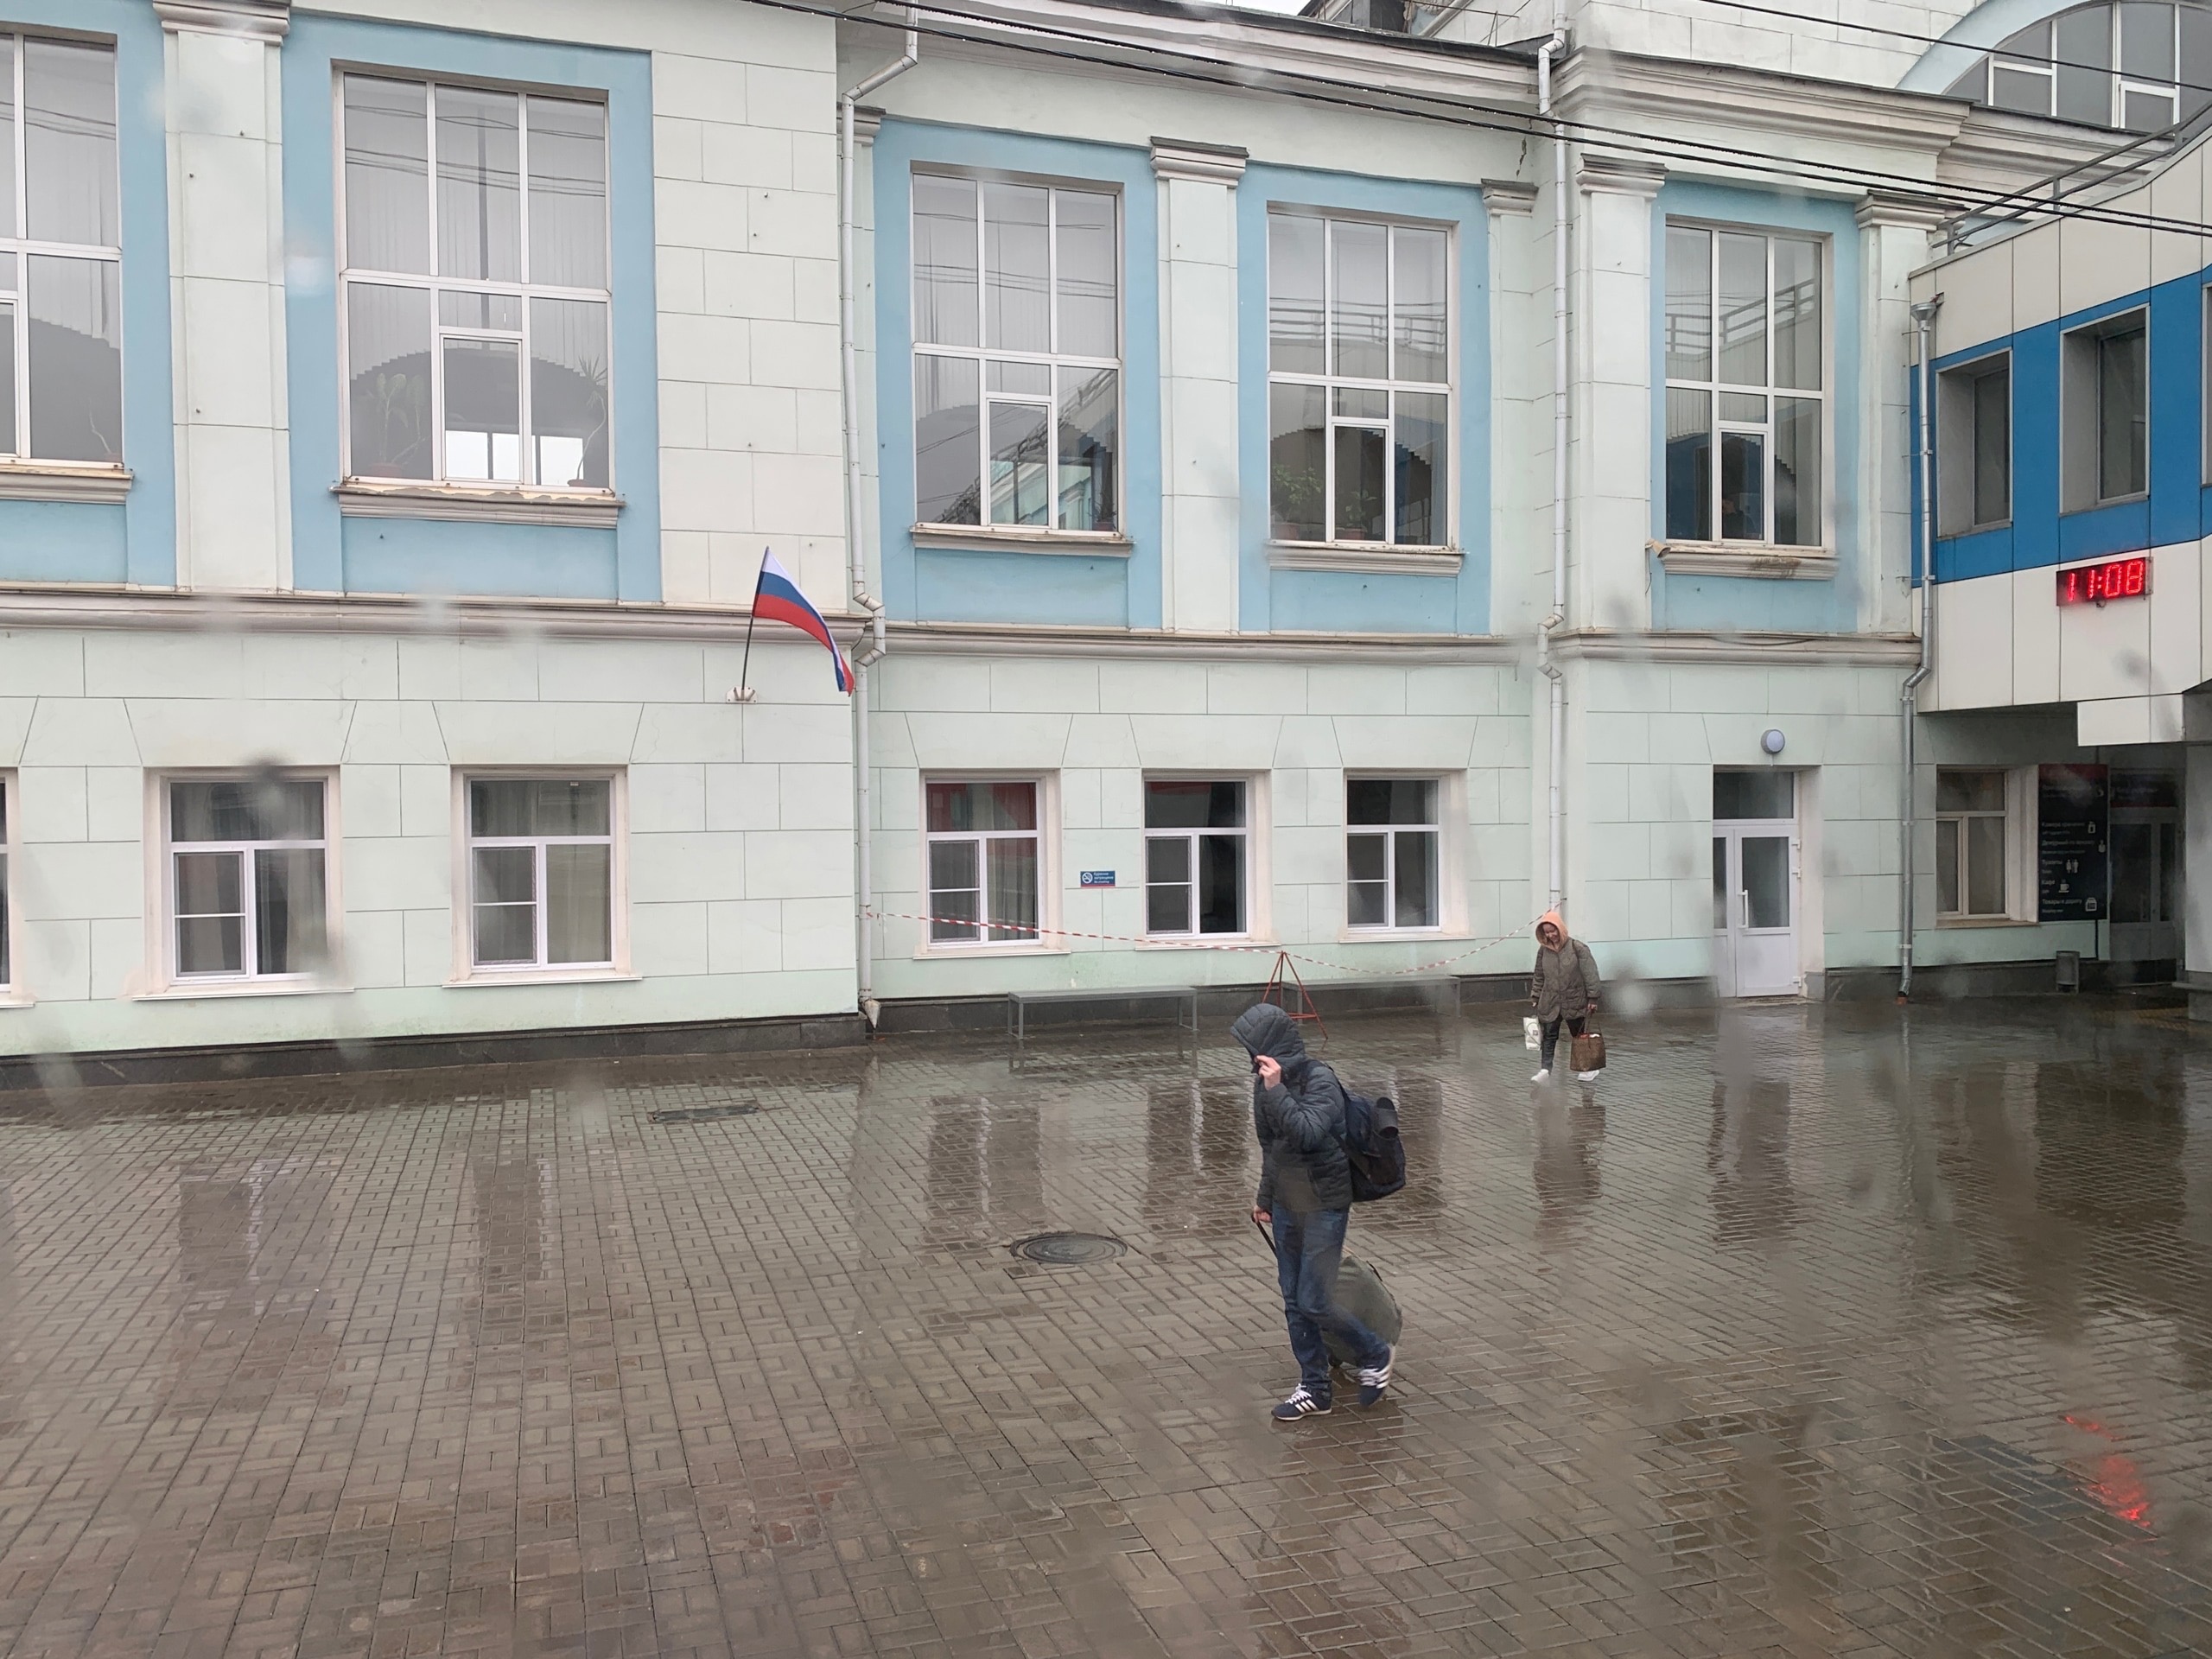 "Ливни и +3°C": синоптики рассказали, с какой погоды начнутся майские праздники в Кирове